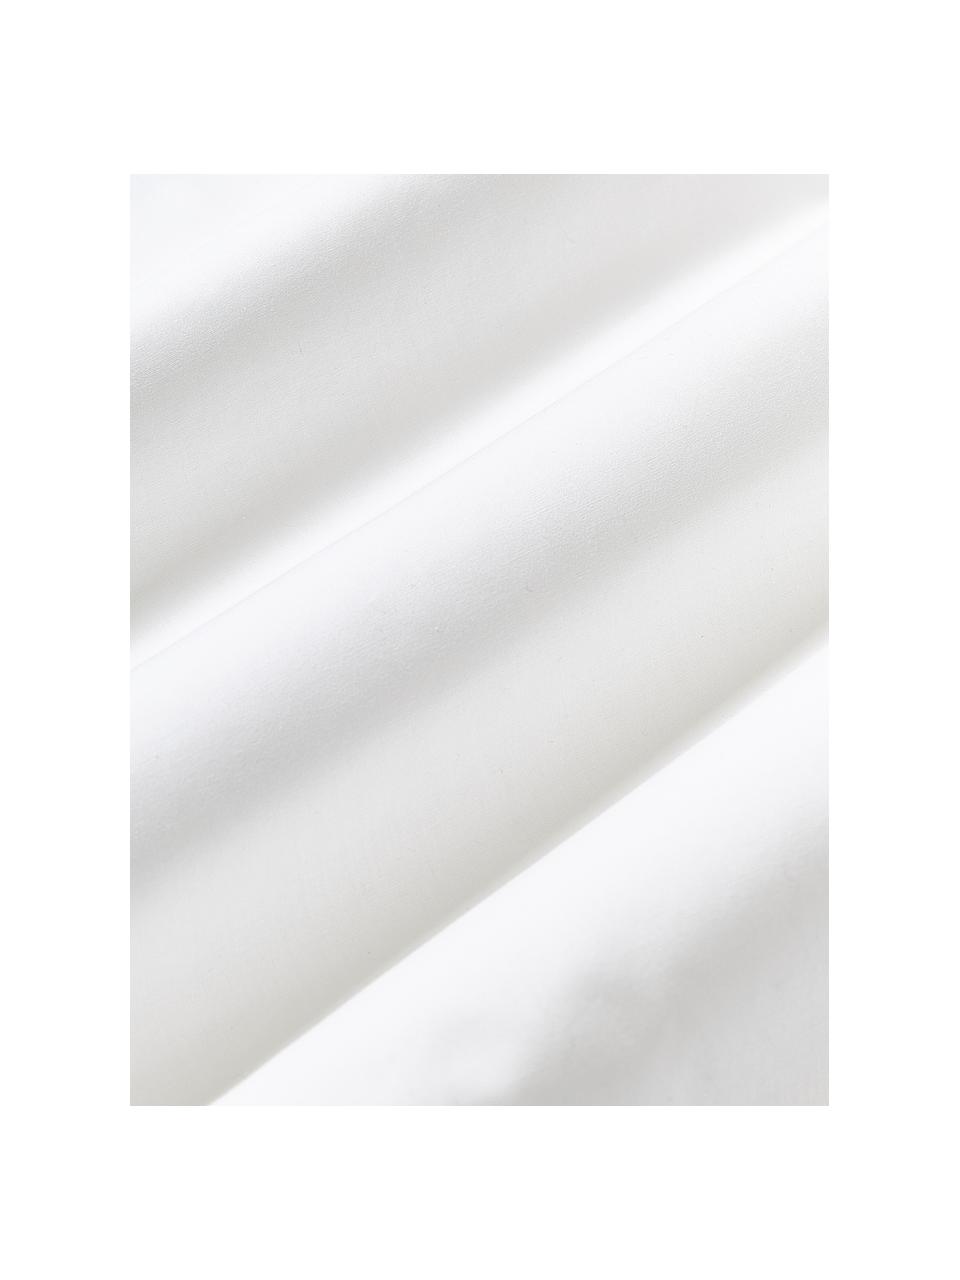 Obliečka na paplón z bavlneného perkálu s vlnitým zvýšeným lemom Atina, 100 % bavlna
Hustota vlákna 200 TC, kvalita Comfort
Posteľná bielizeň z bavlny je príjemná na dotyk, dobre absorbuje vlhkosť a je vhodná pre alergikov
Materiál použitý v tomto výrobku bol testovaný na škodlivé látky a certifikovaný podľa STANDARD 100 by OEKO-TEX® (10817CIT, CITEVE)., Biela, svetložltá, Š 220 x D 240 cm